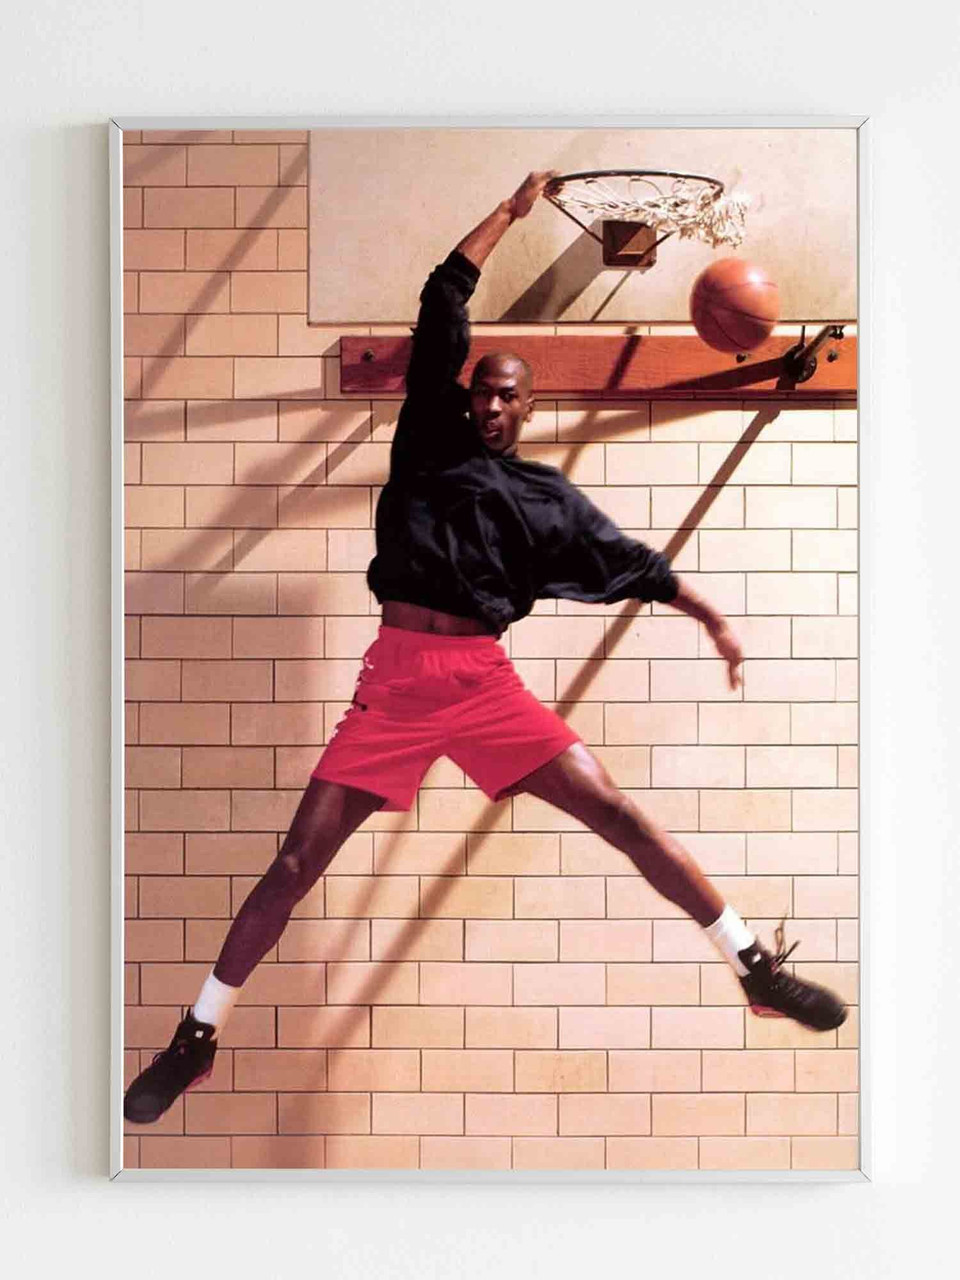 Michael Jordan 19201200 Dunk Wallpaper  Basketball Wallpapers at  BasketWallpaperscom